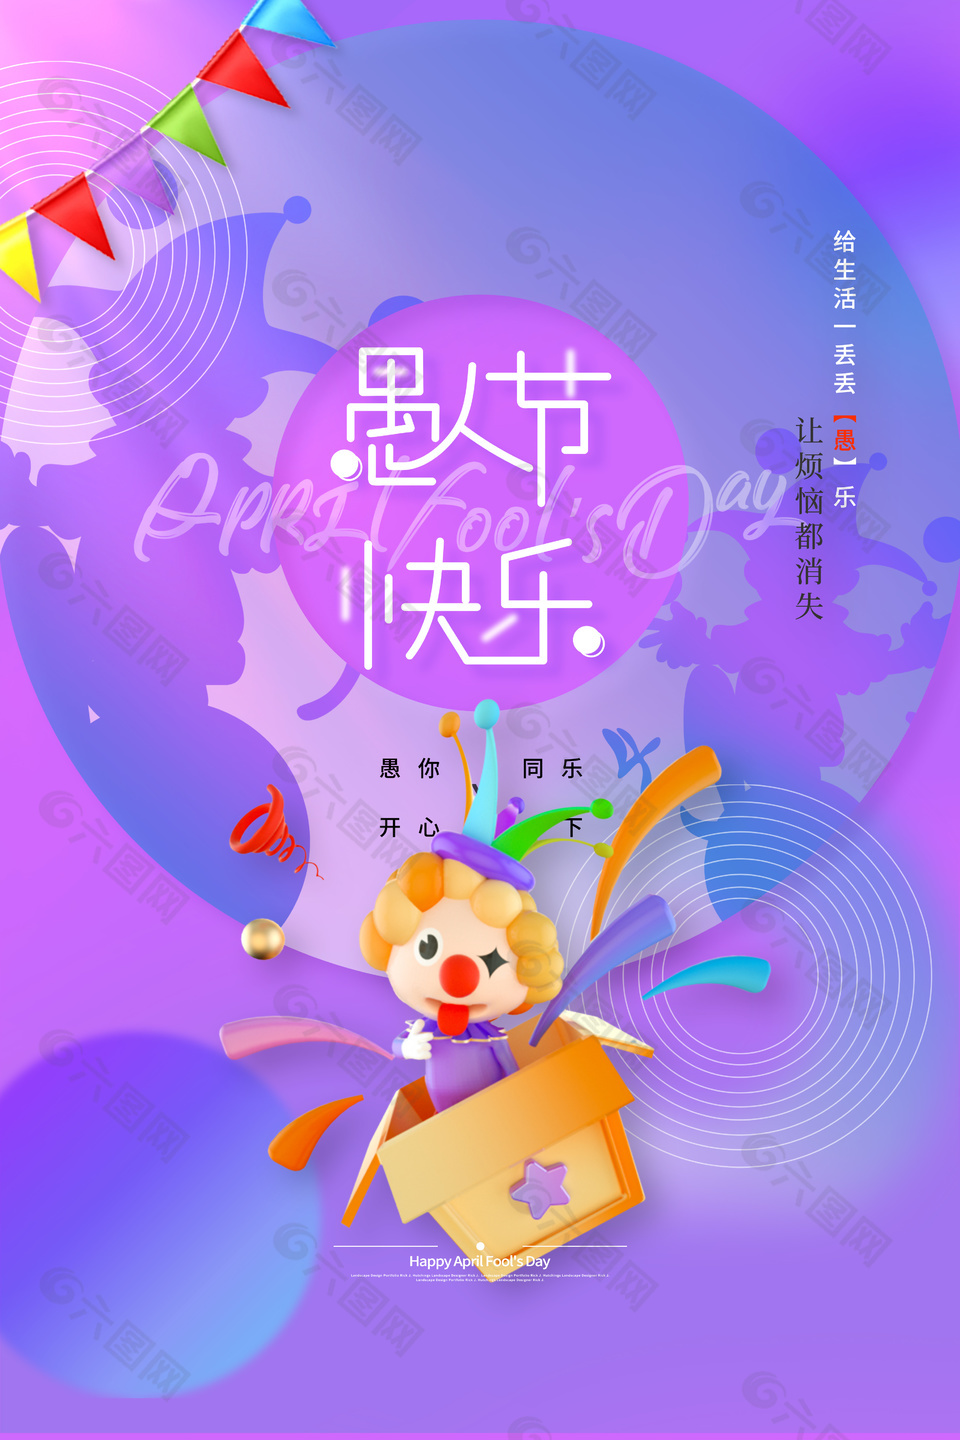 紫色剪影愚人节快乐海报素材下载